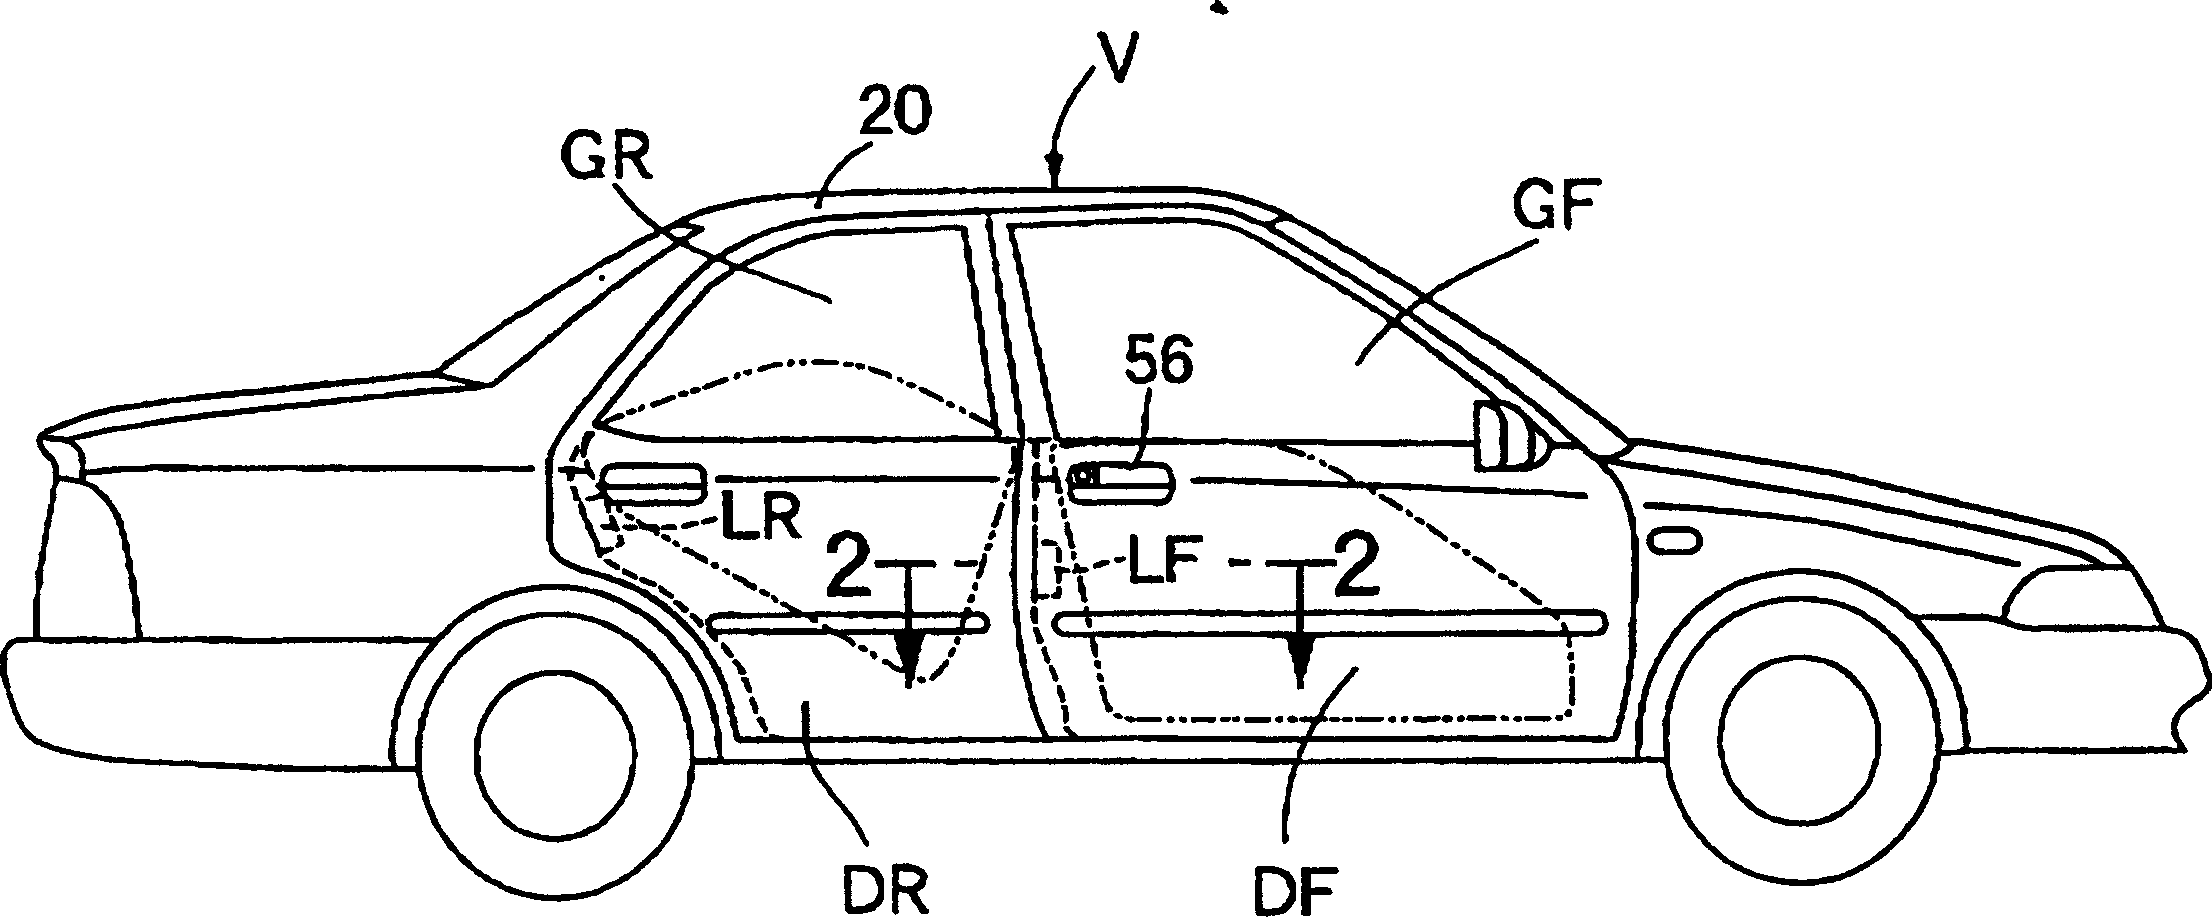 Door lock device for vehicle